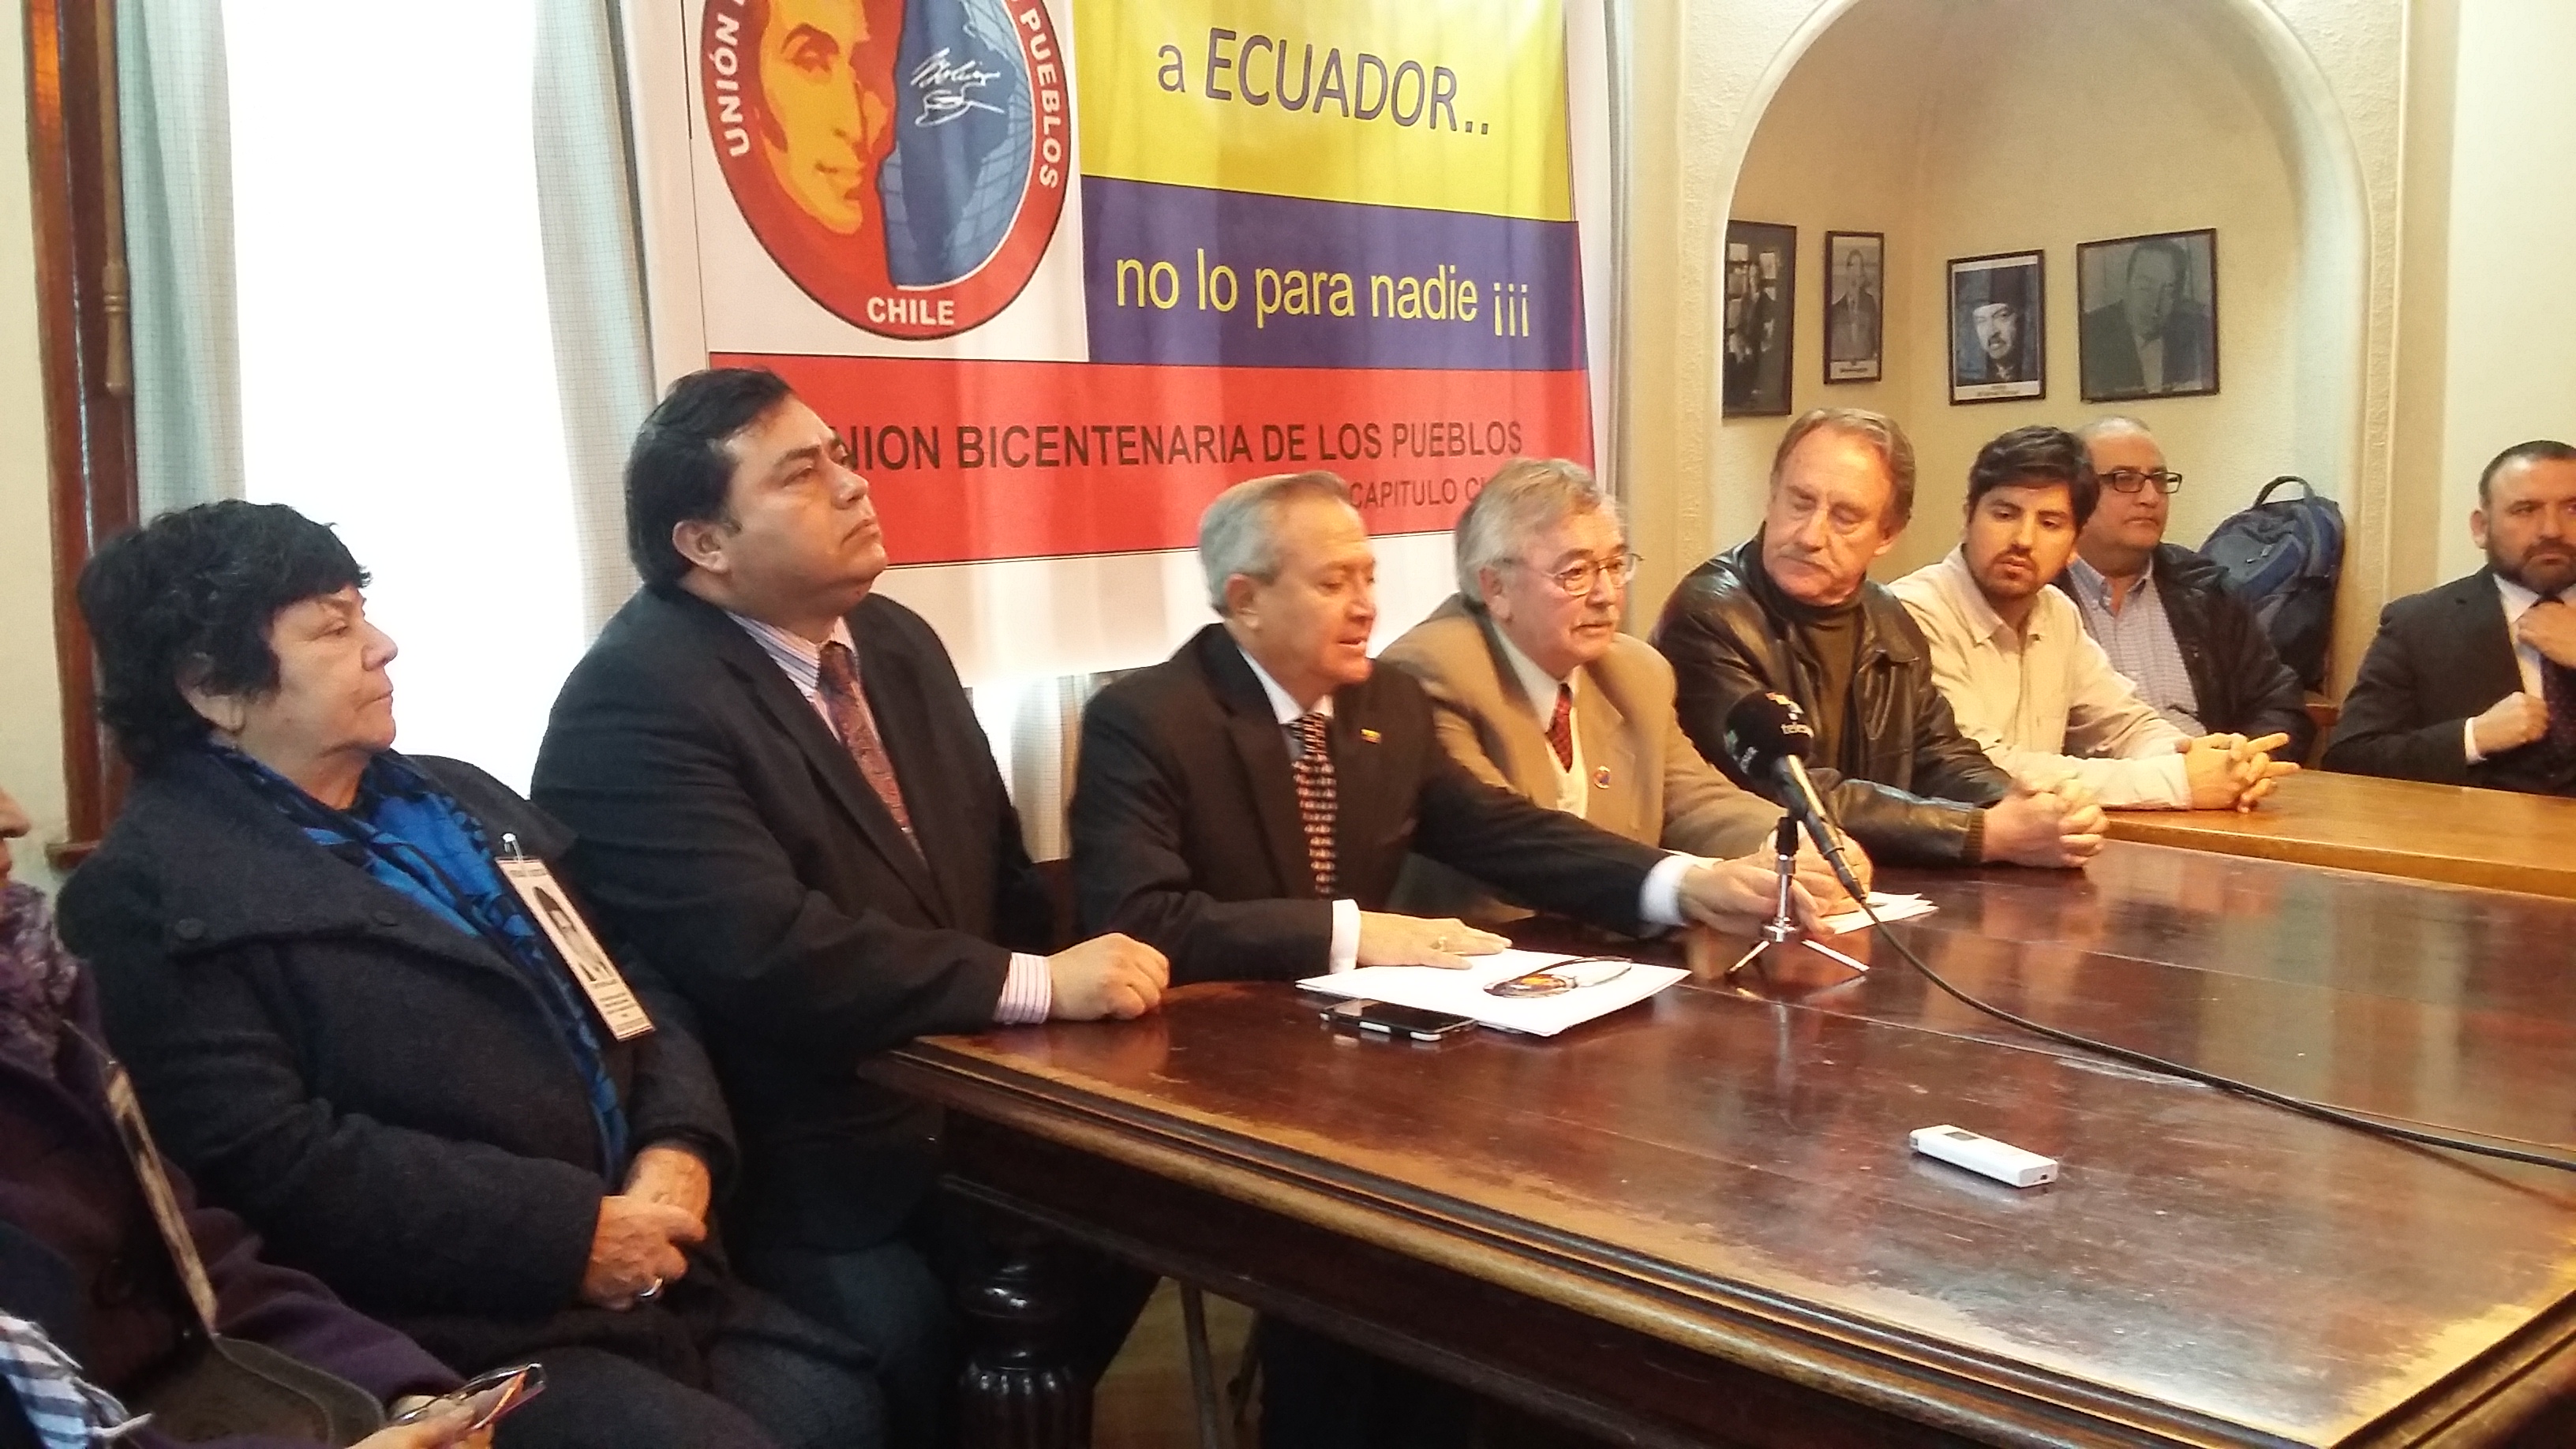 La UBP junto con otras organizaciones políticas de izquierda firmaron el documento en apoyo a Ecuador.